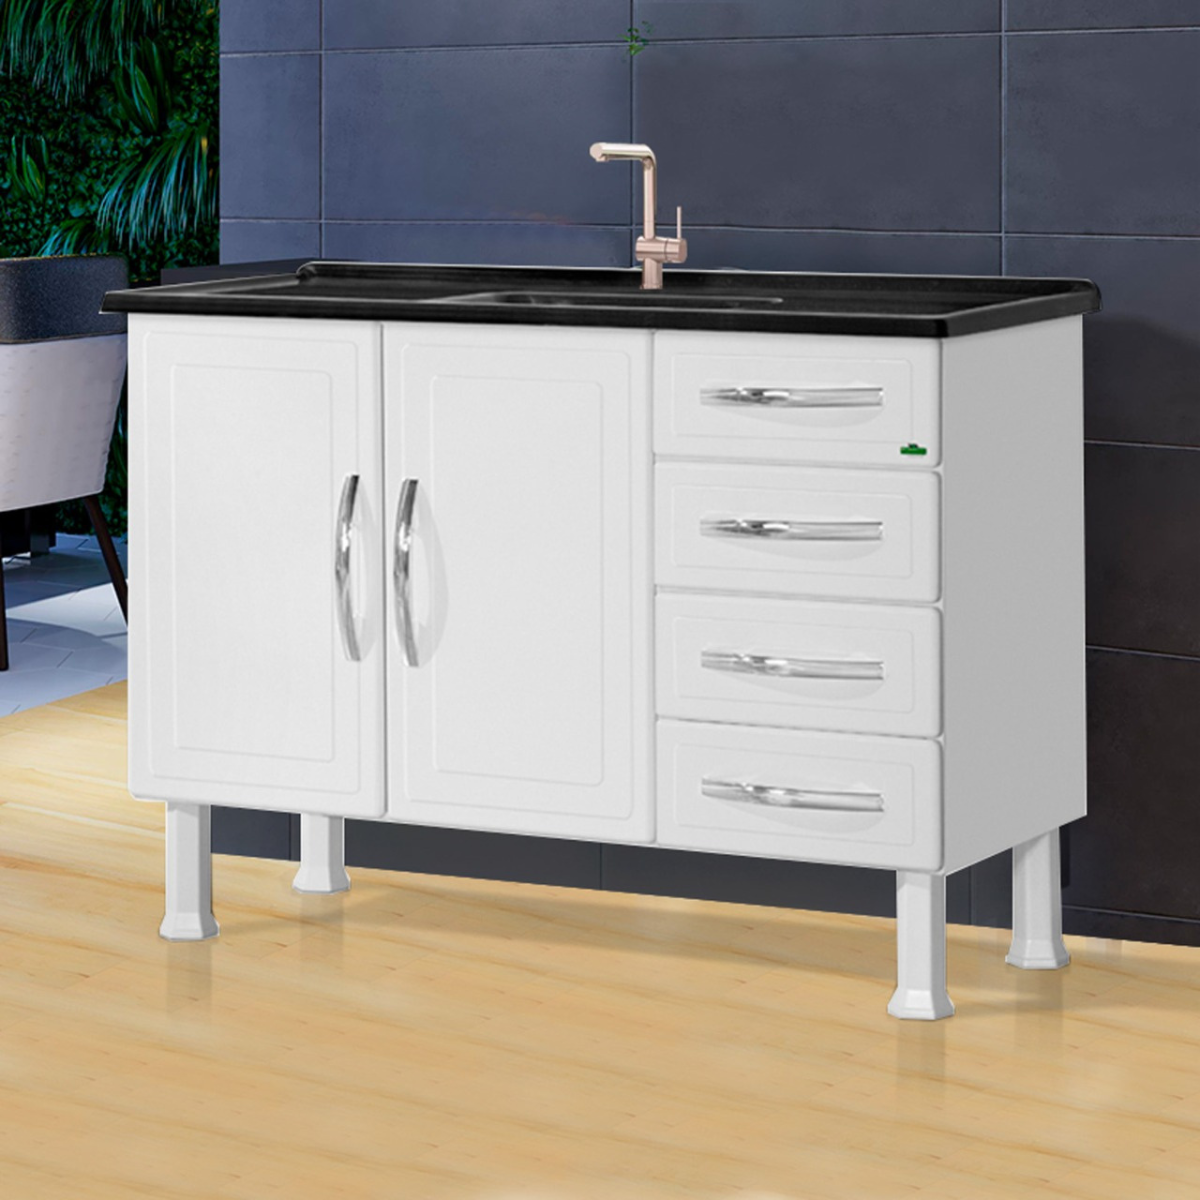 Gabinete Cozinha Sofisticado Aço Resistente 1,20m Qualidade:gaveta Branca